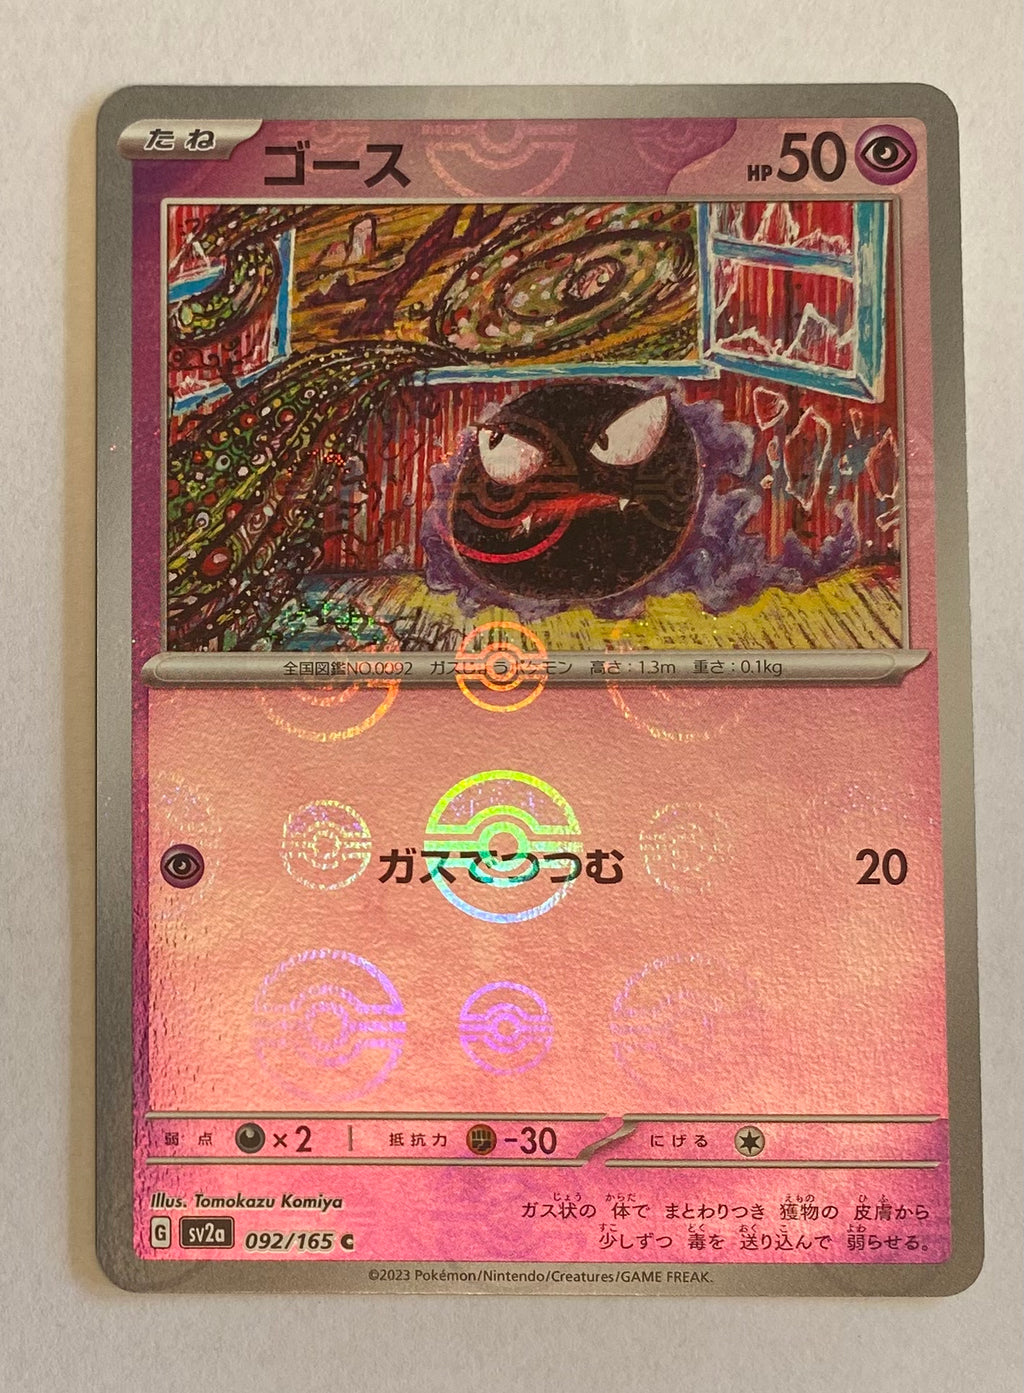 sv2a Japanese Pokemon Card 151 - 092/165 Gastly Reverse Holo